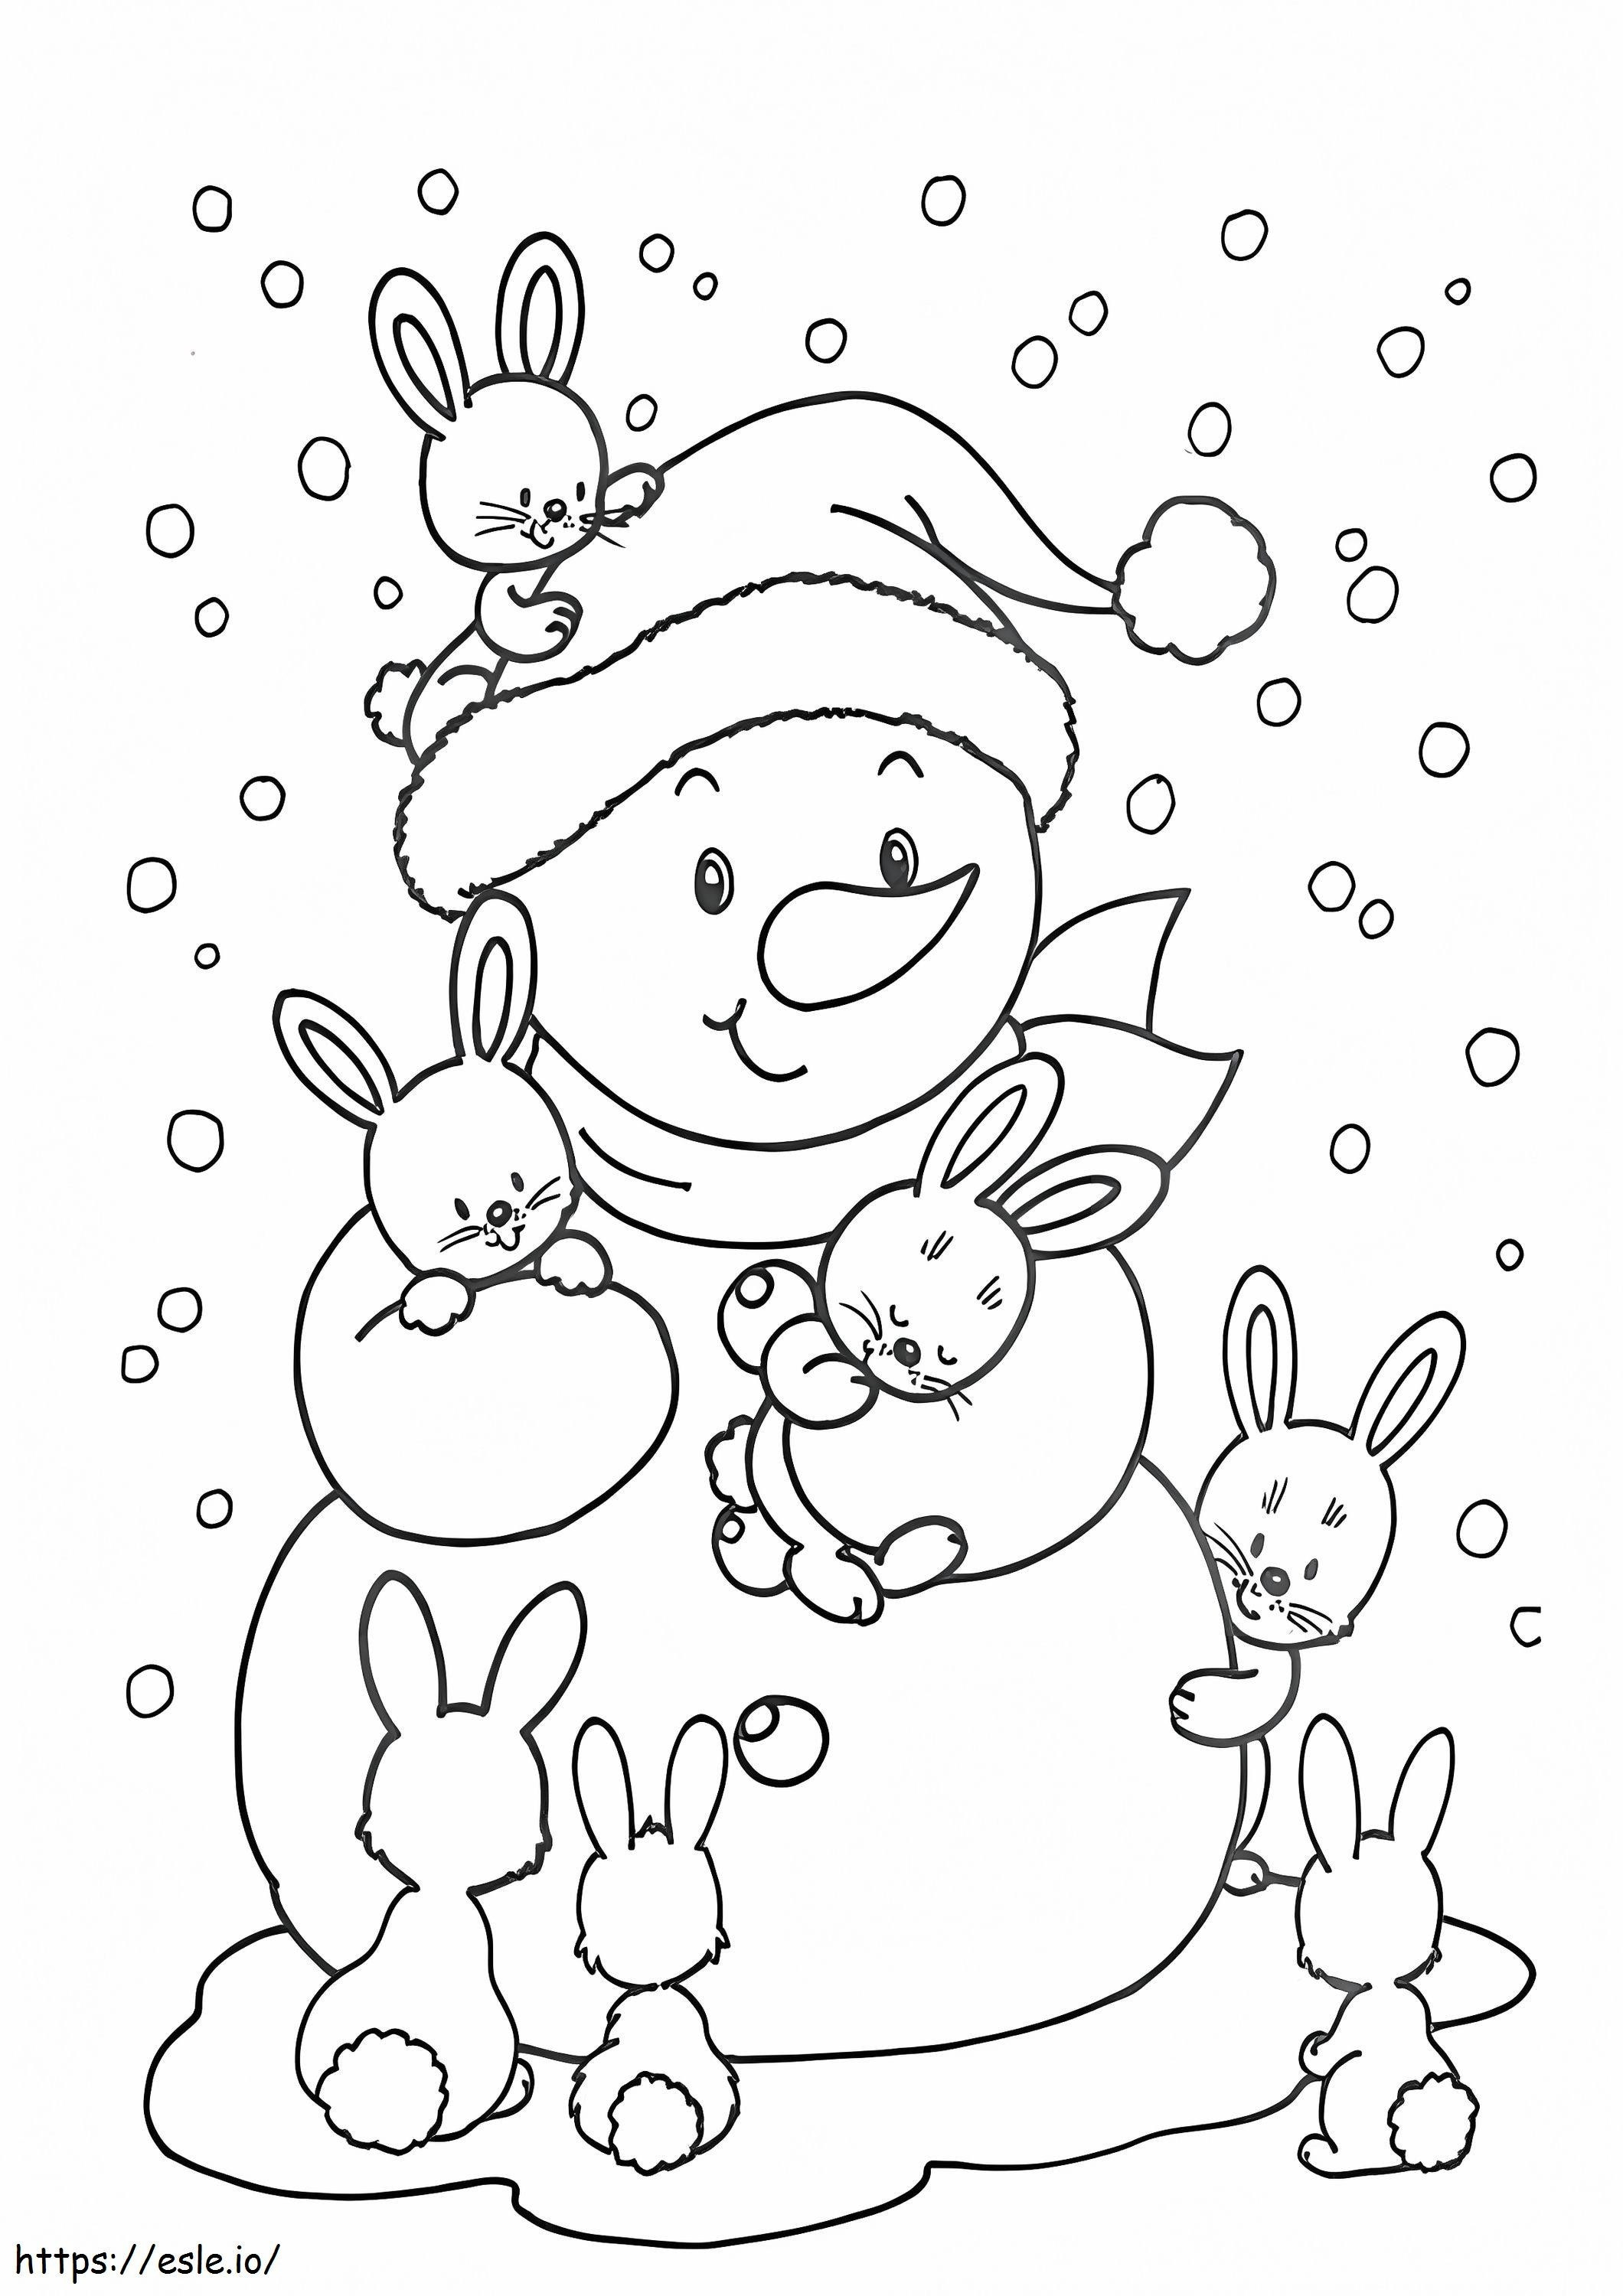 Conejo y bola de nieve en invierno para colorear